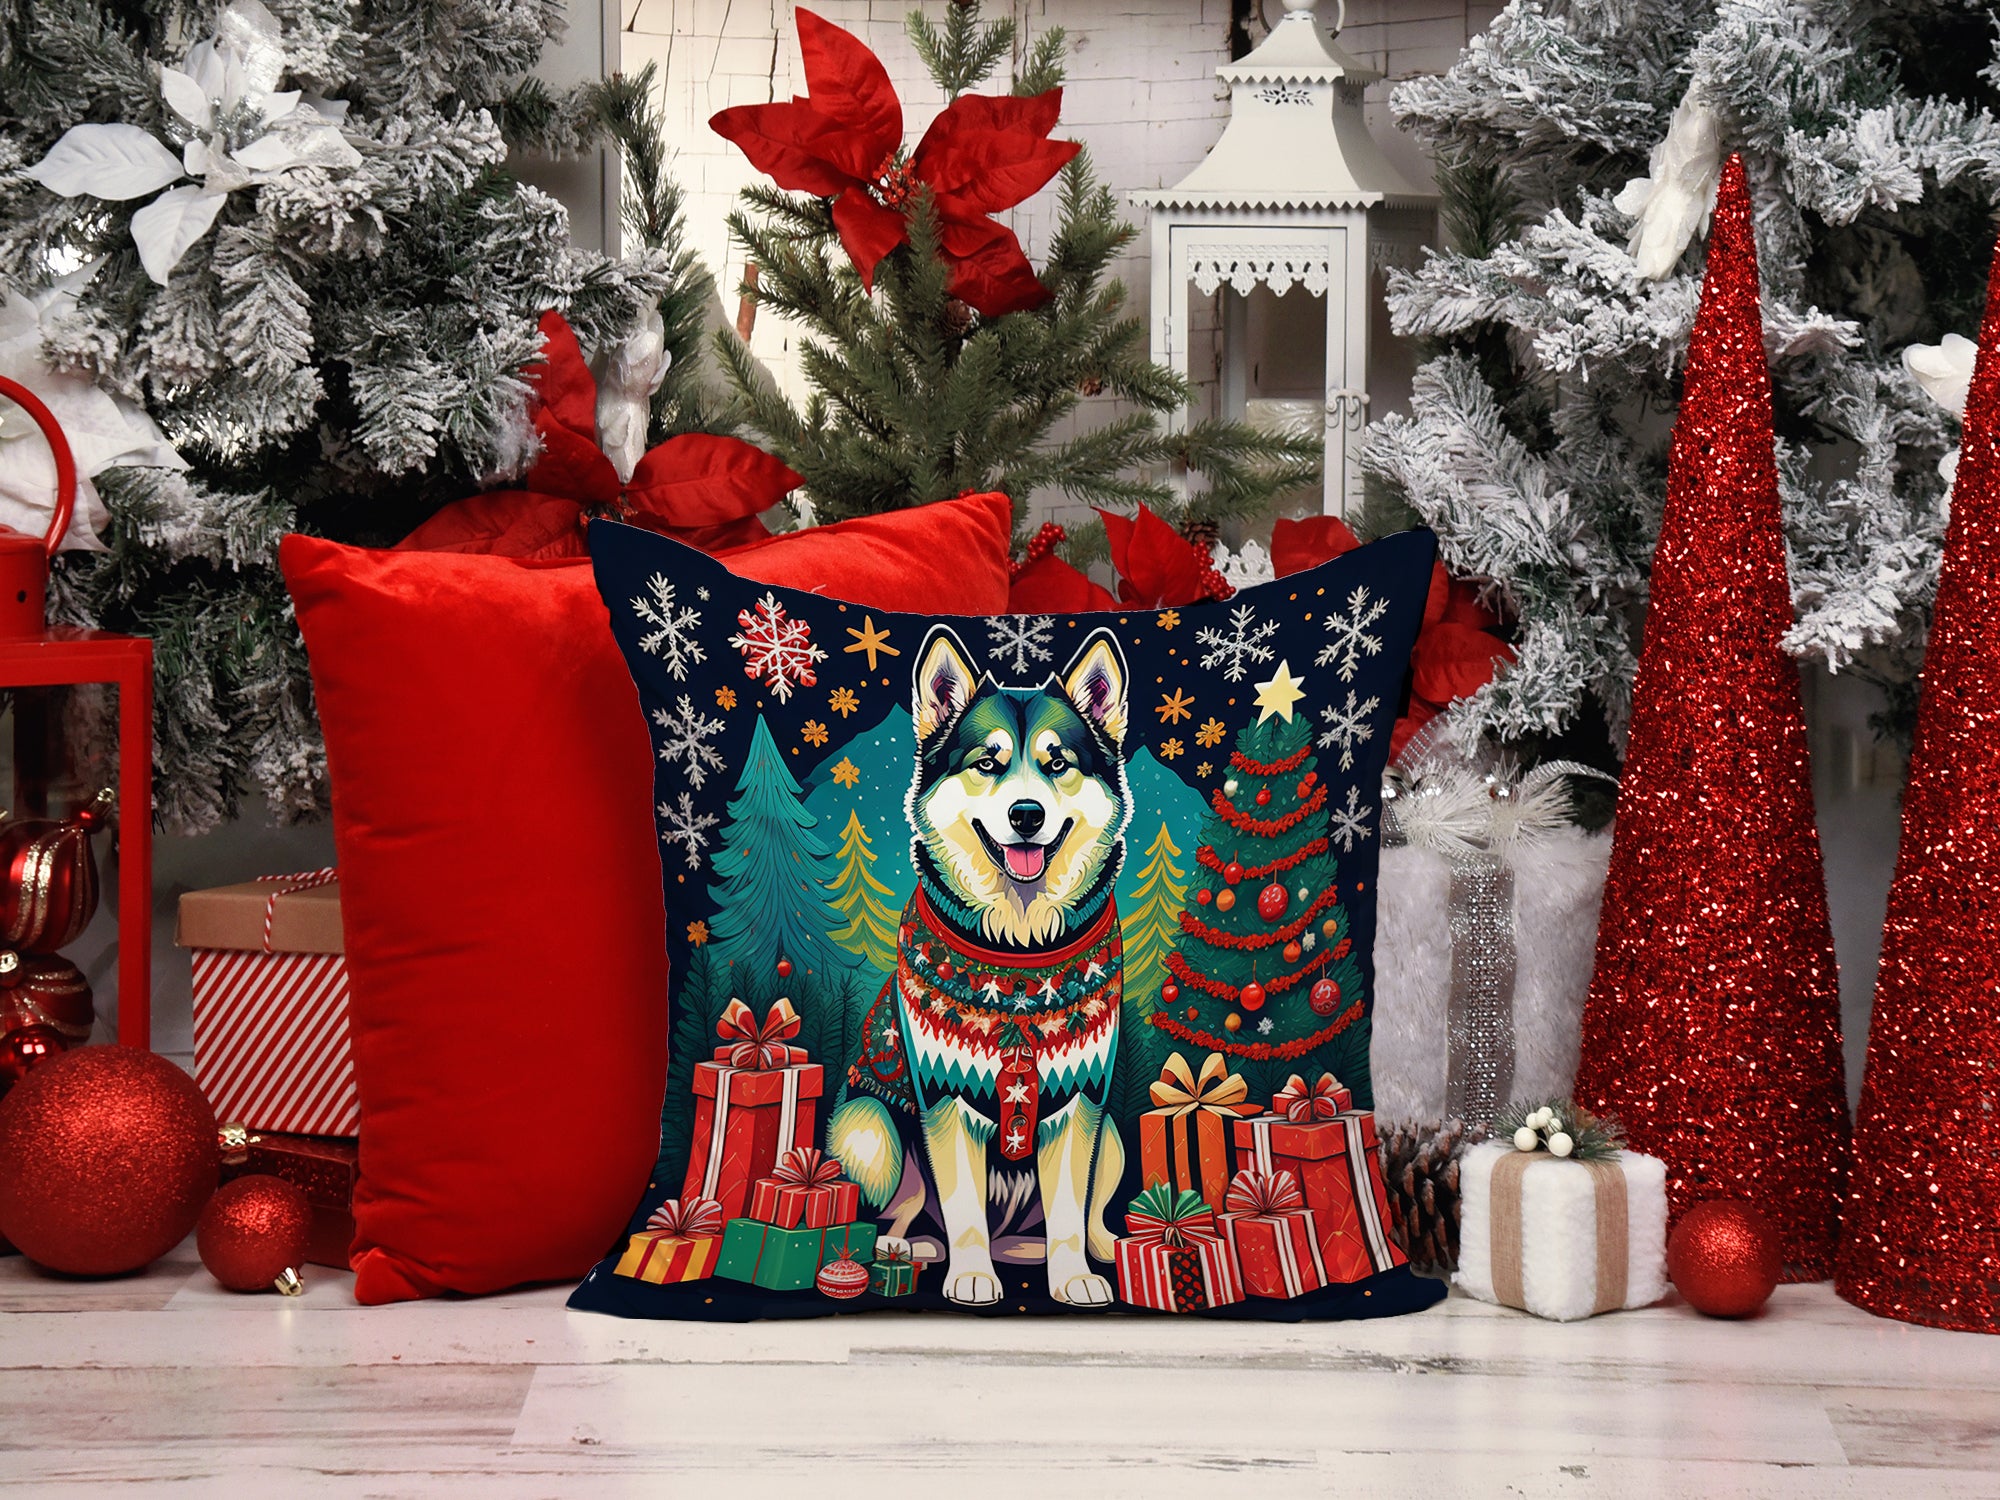 Alaskan Malamute Christmas Fabric Decorative Pillow